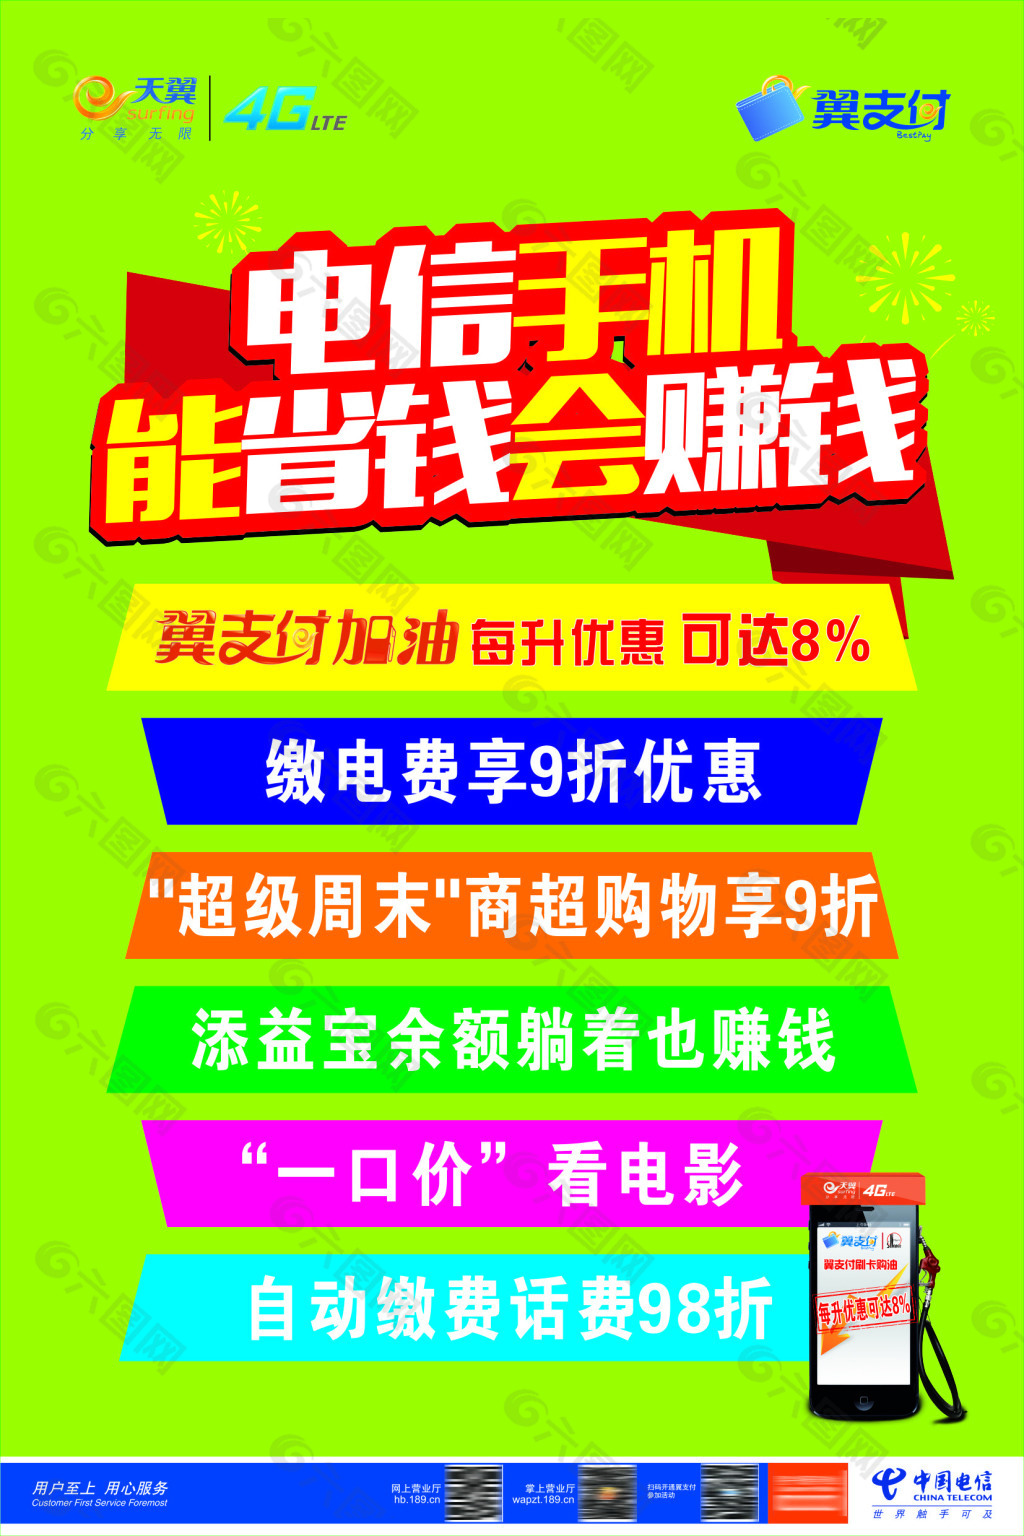 中国电信翼支付 宣传海报